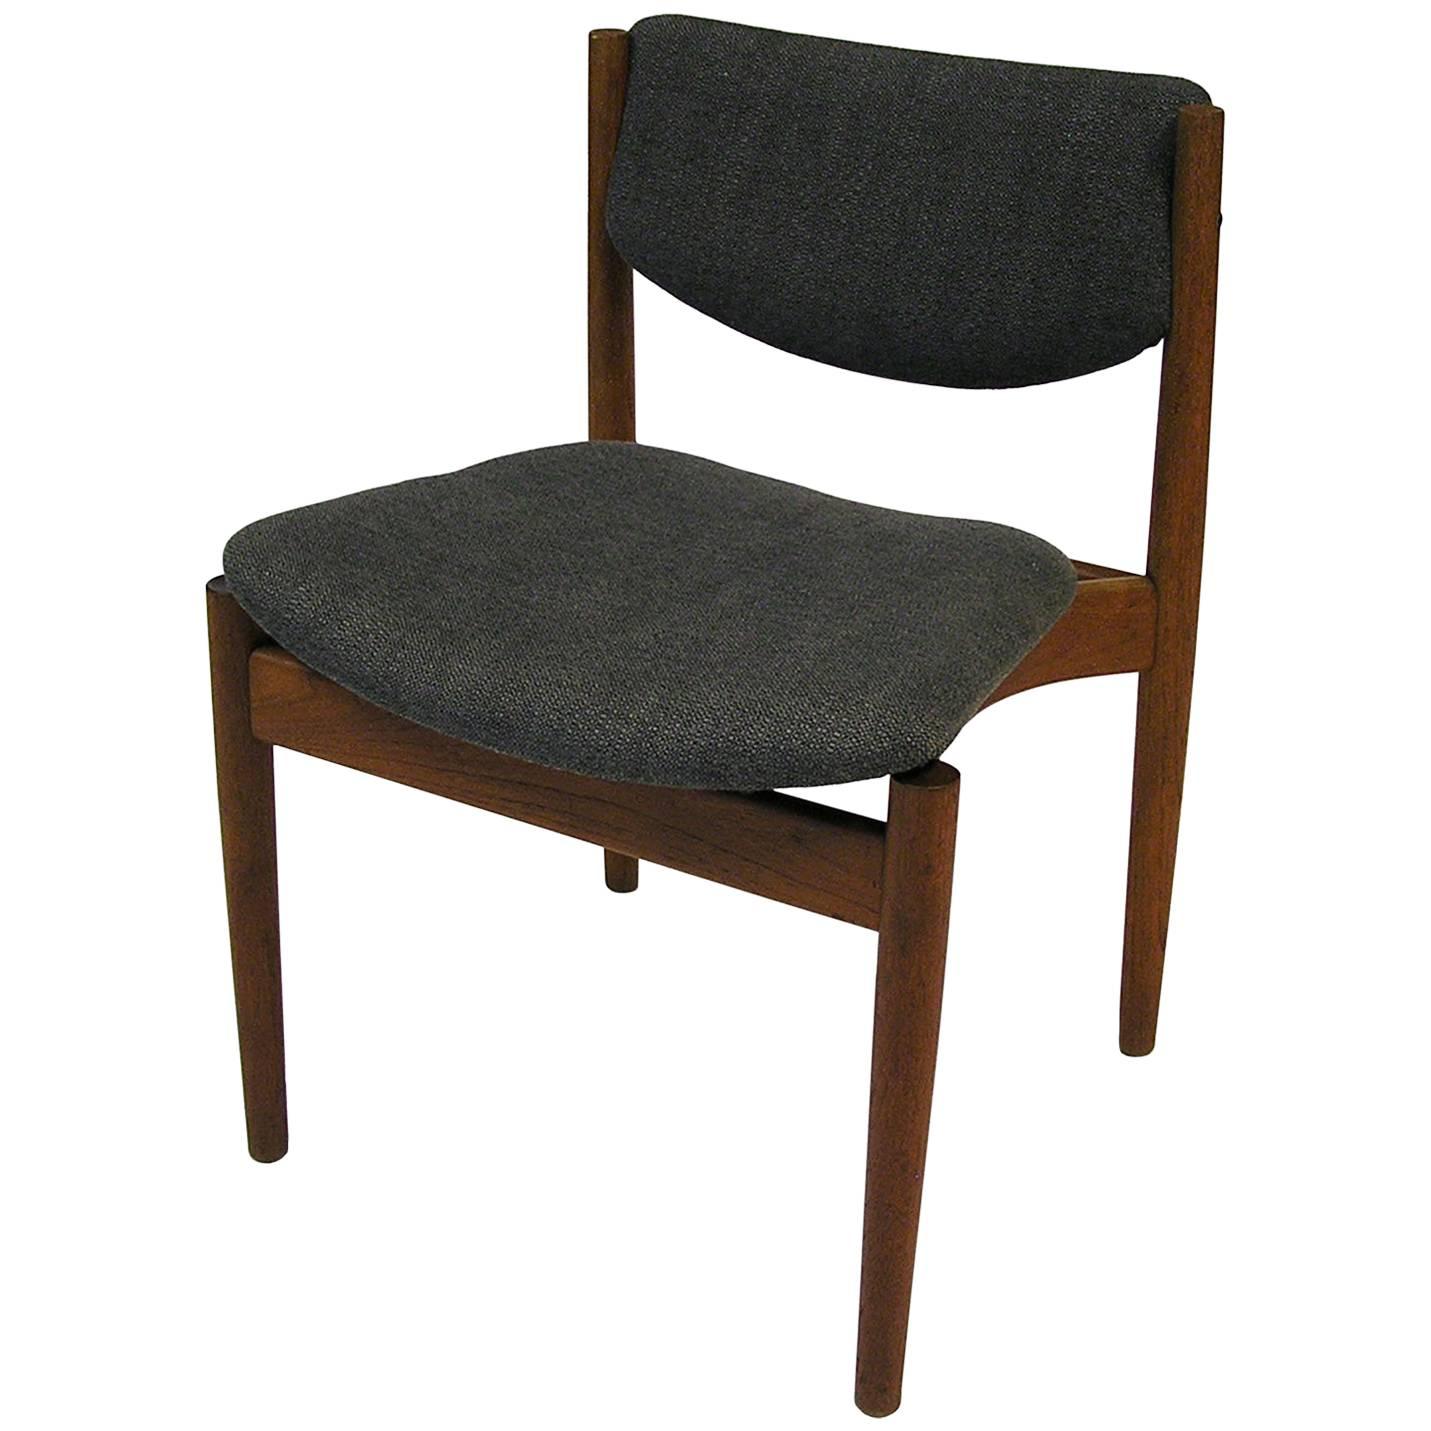 1960s Finn Juhl Model 197 Teak Dining Chair, Denmark